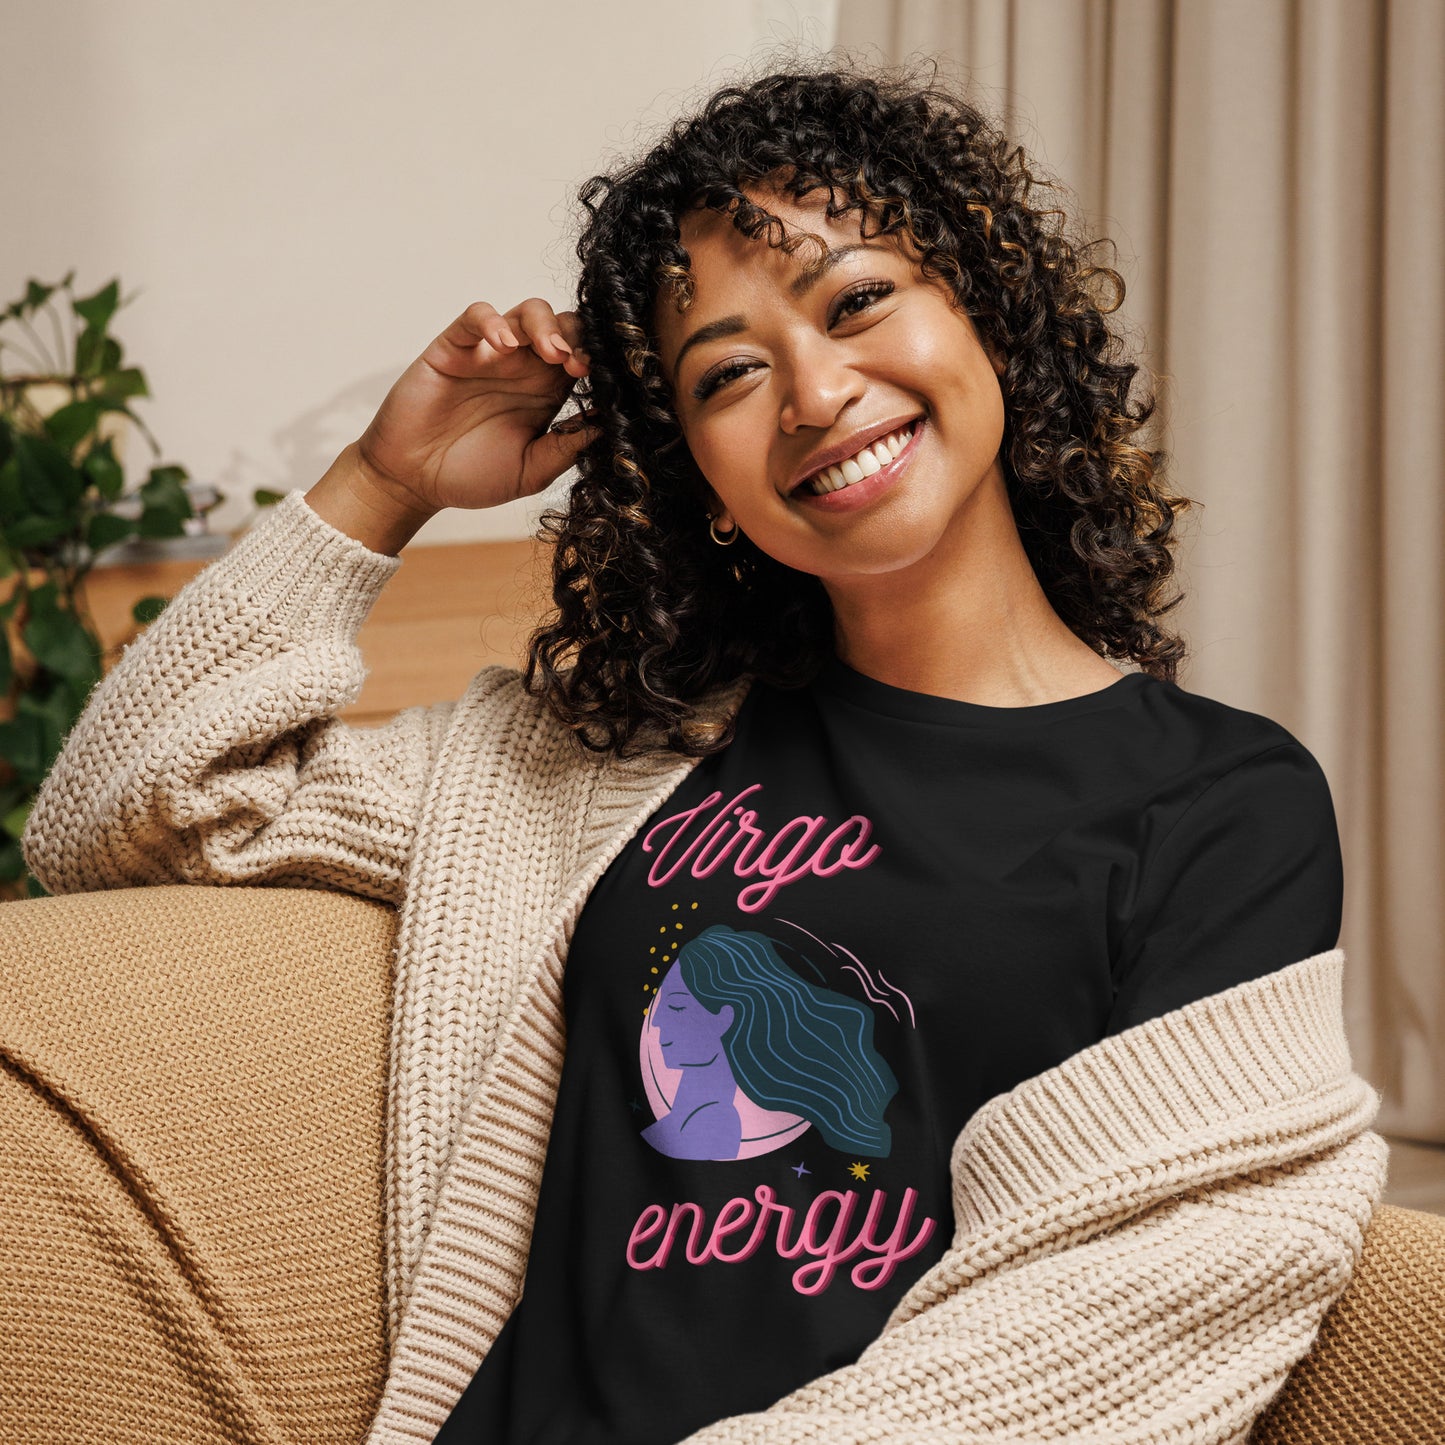 Virgo Energy Women's Relaxed T-Shirt